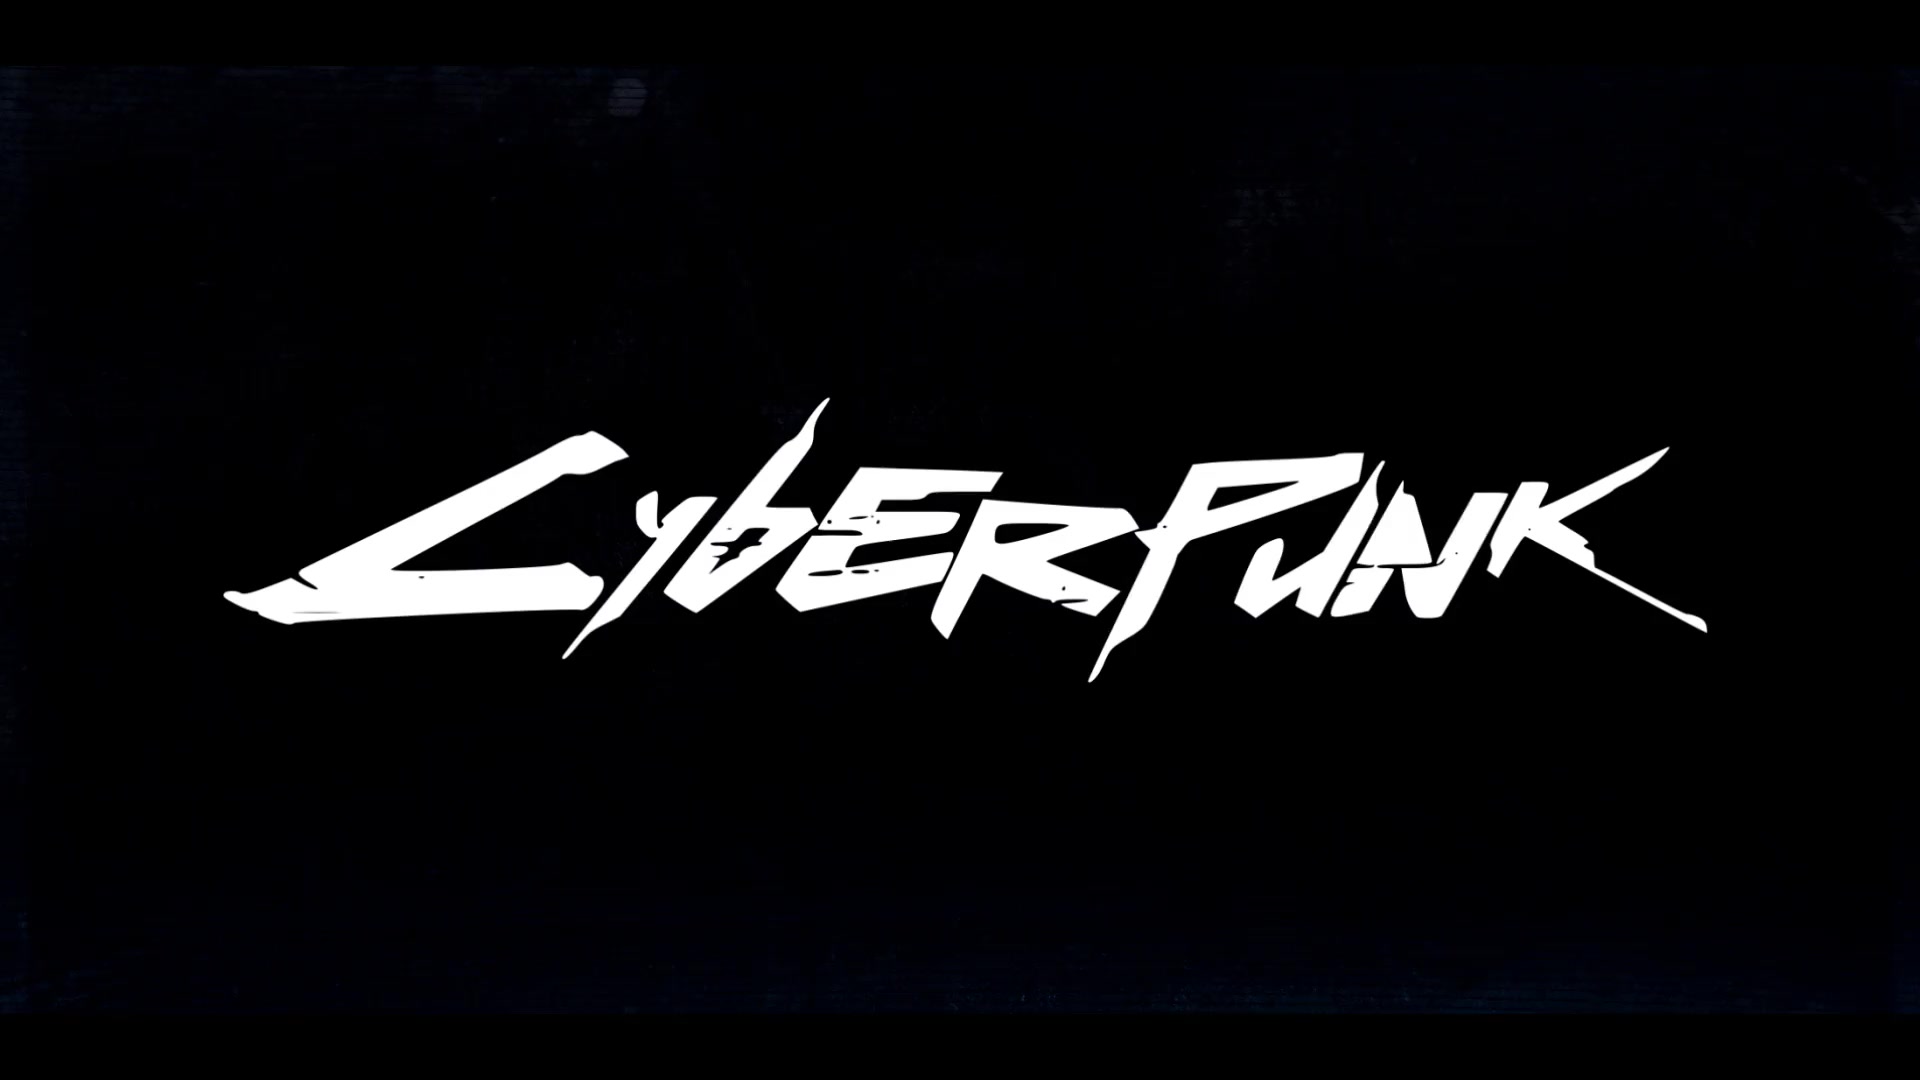 Cyberpunk font online фото 81